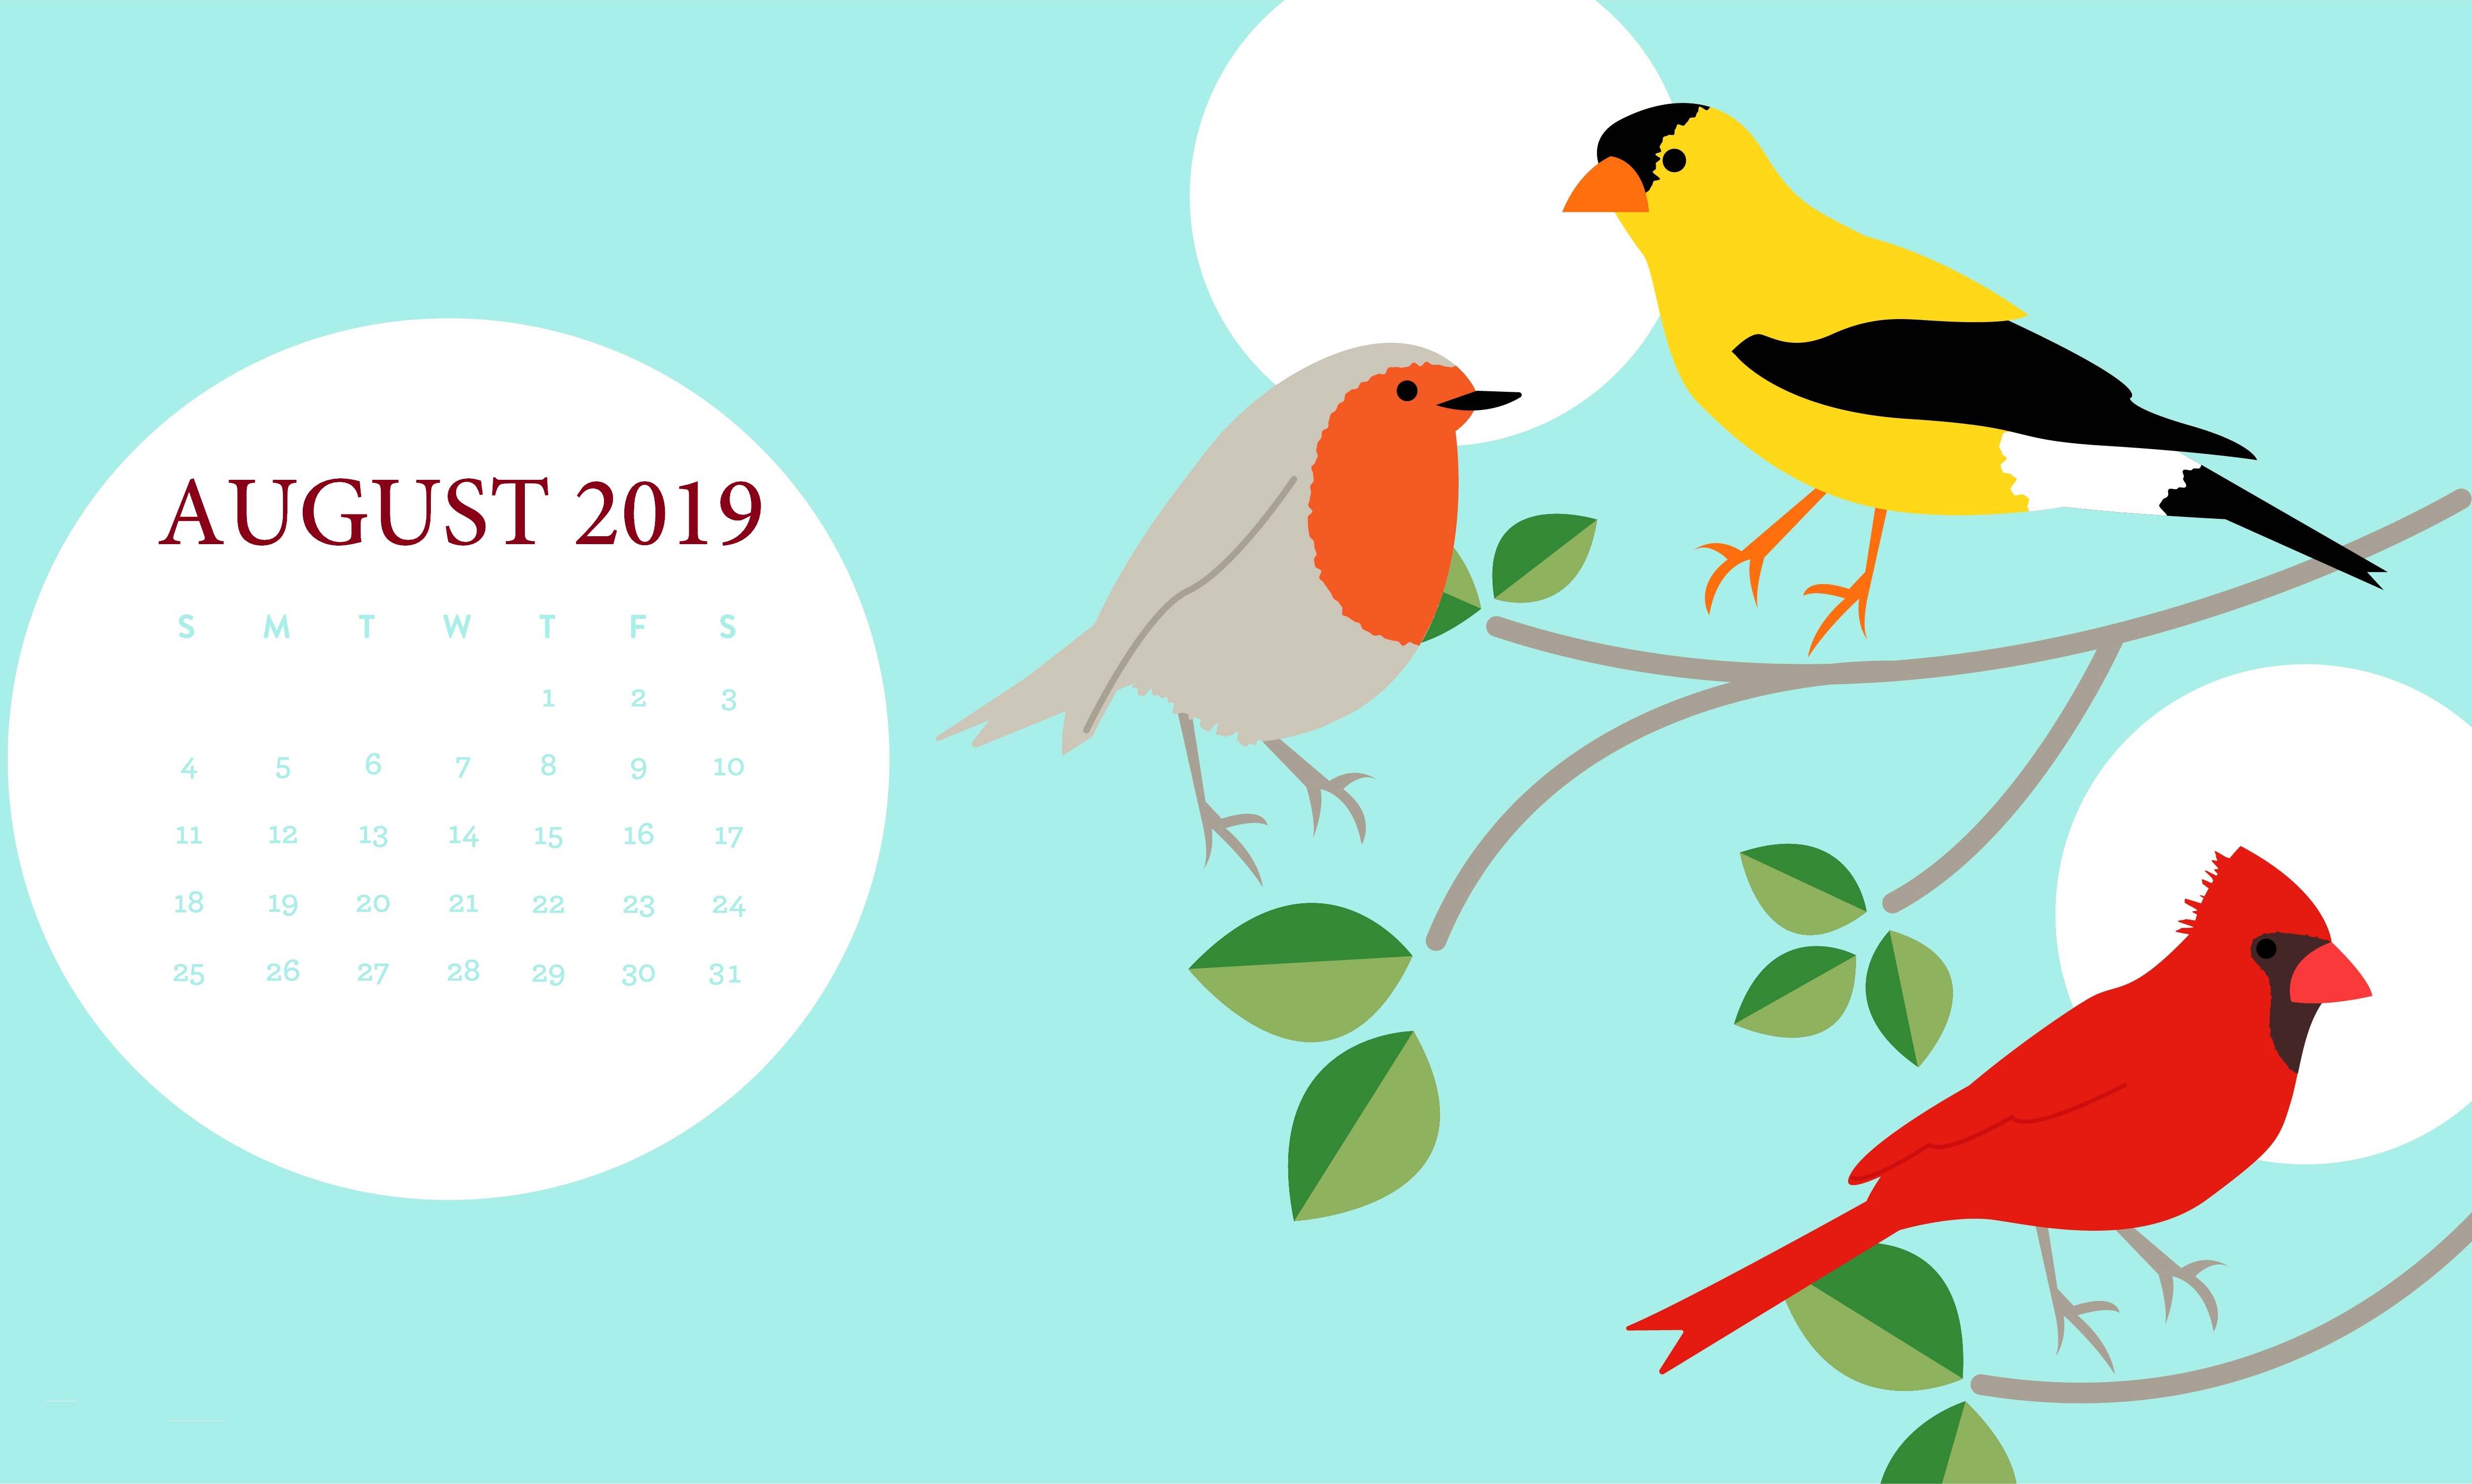 August 2019 Hd Calendar Desktop Wallpaper - August 2019 Desktop Calendar - HD Wallpaper 